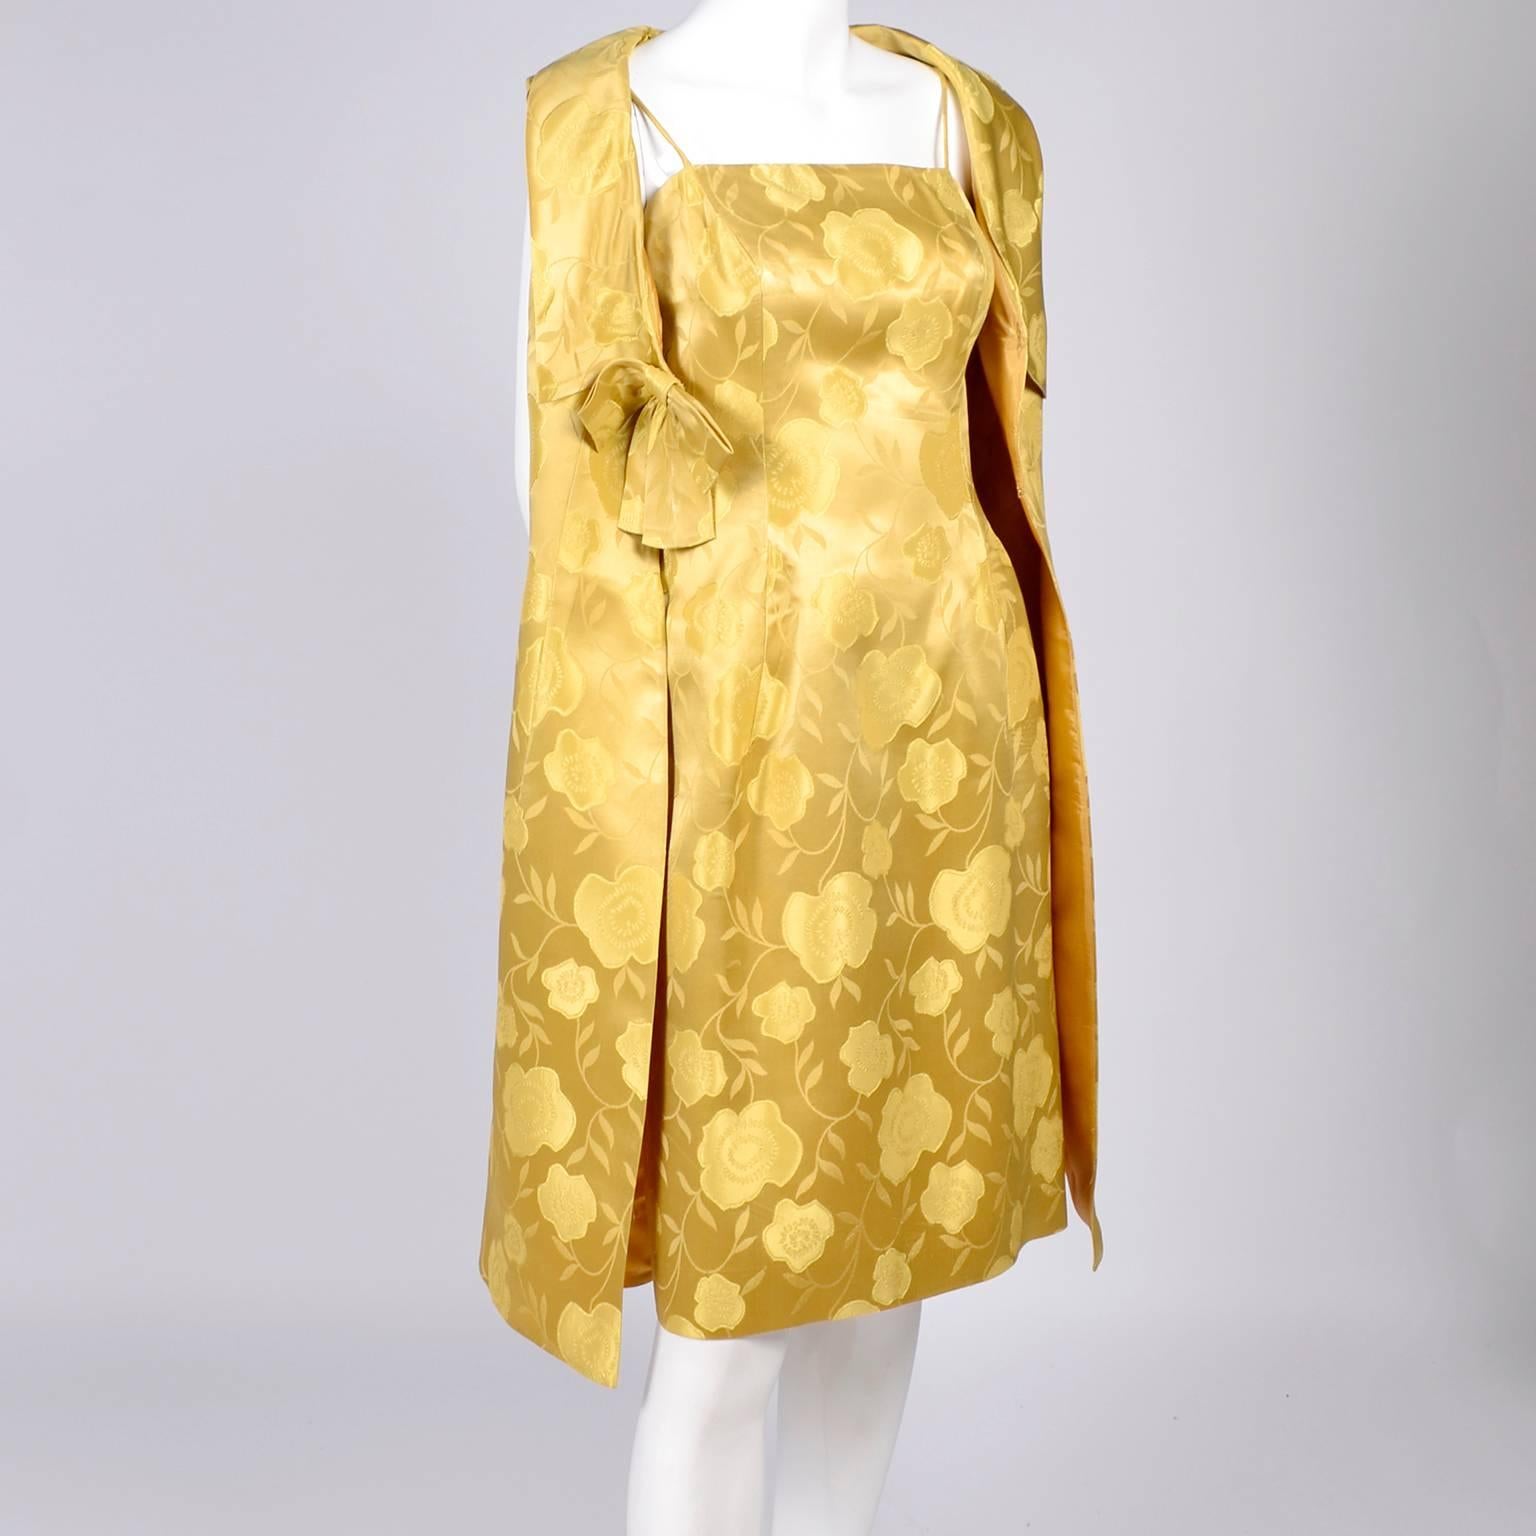 gold satin cocktail dress